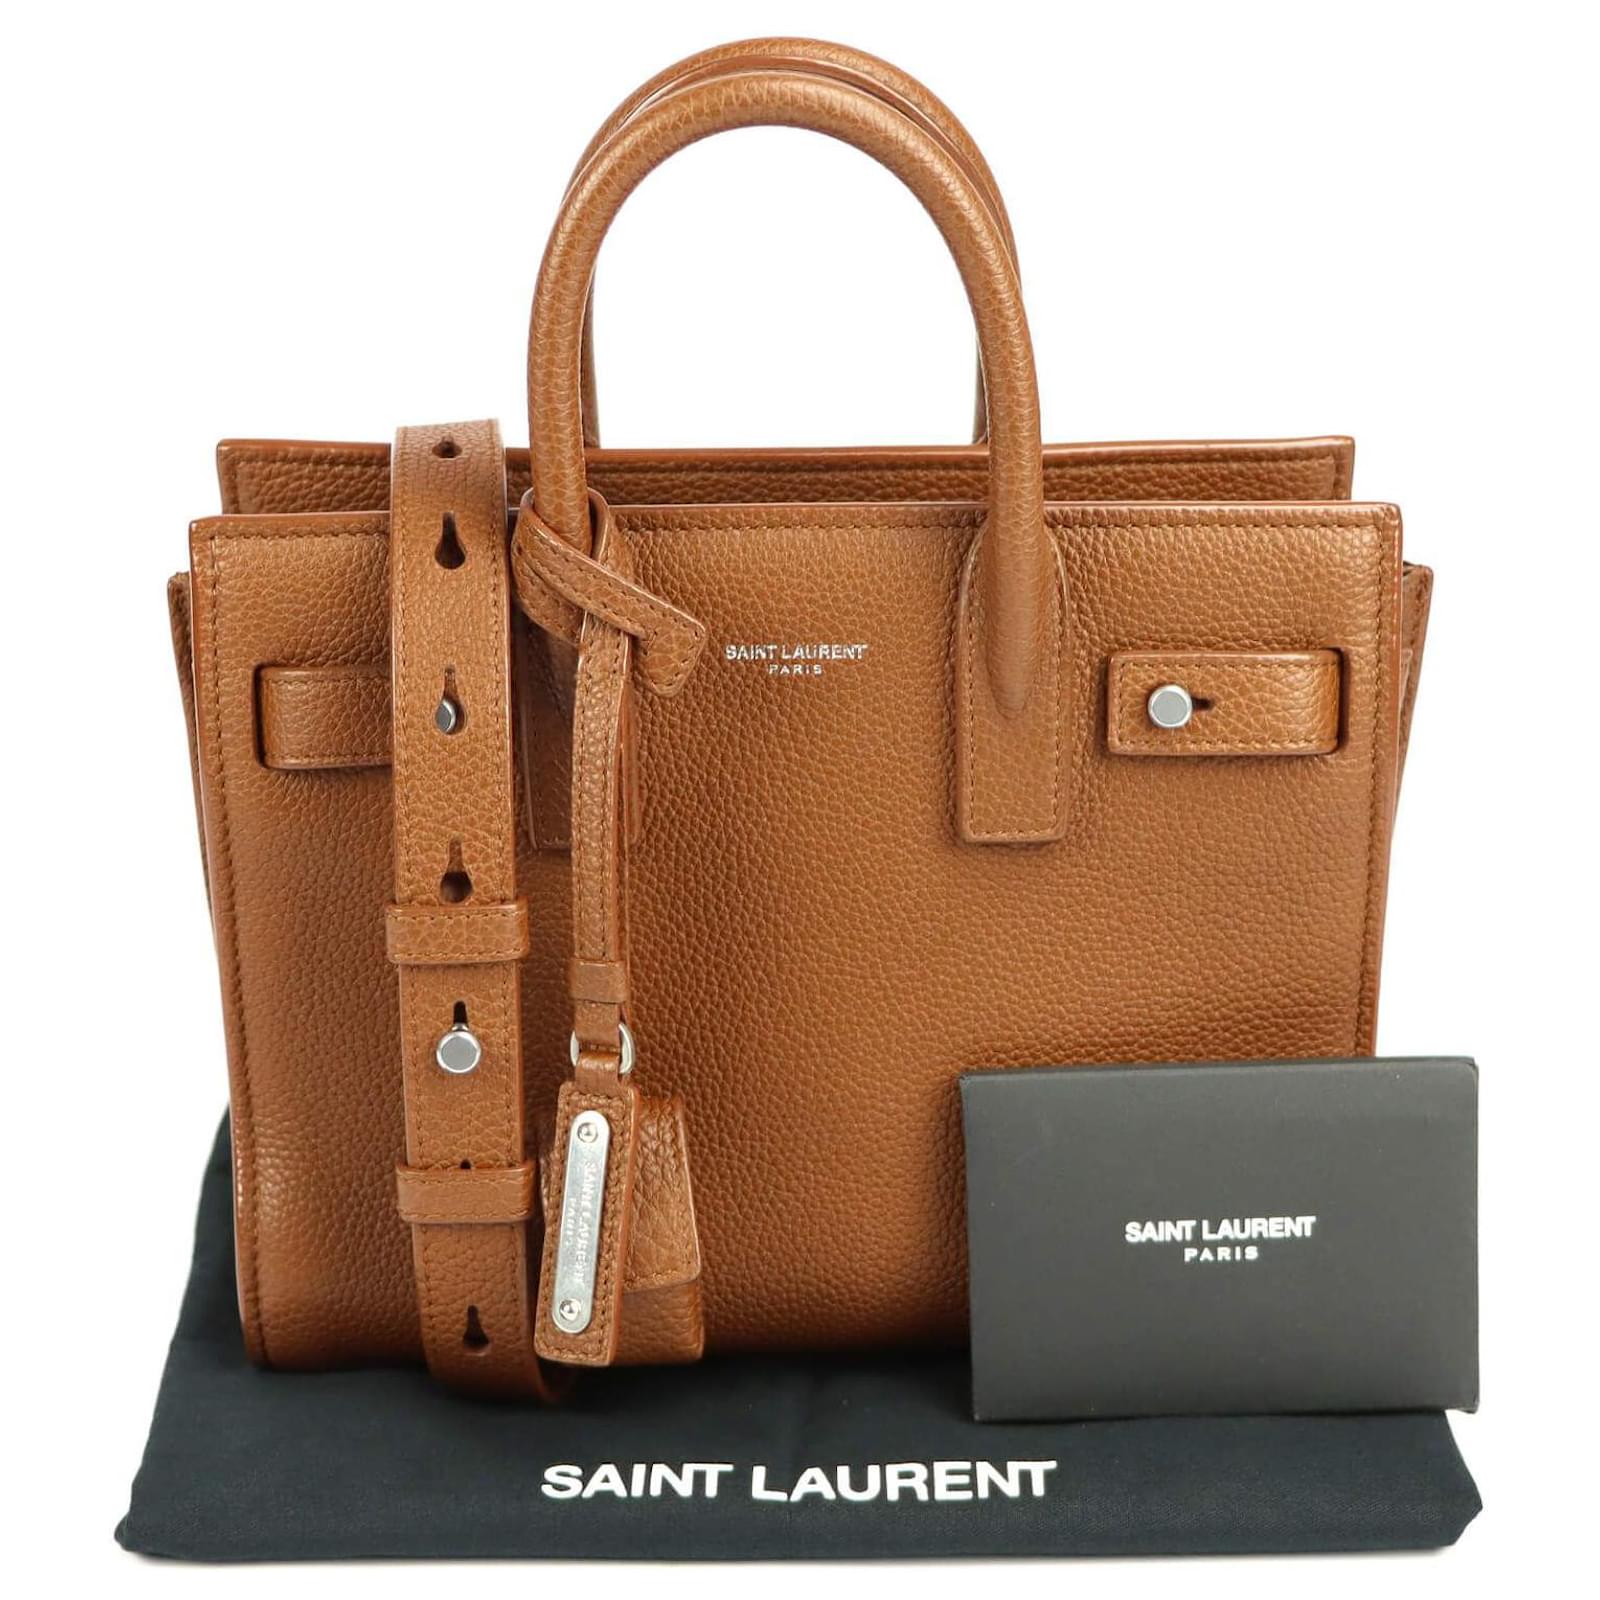 Yves Saint Laurent Sac De Jour Nano Bag